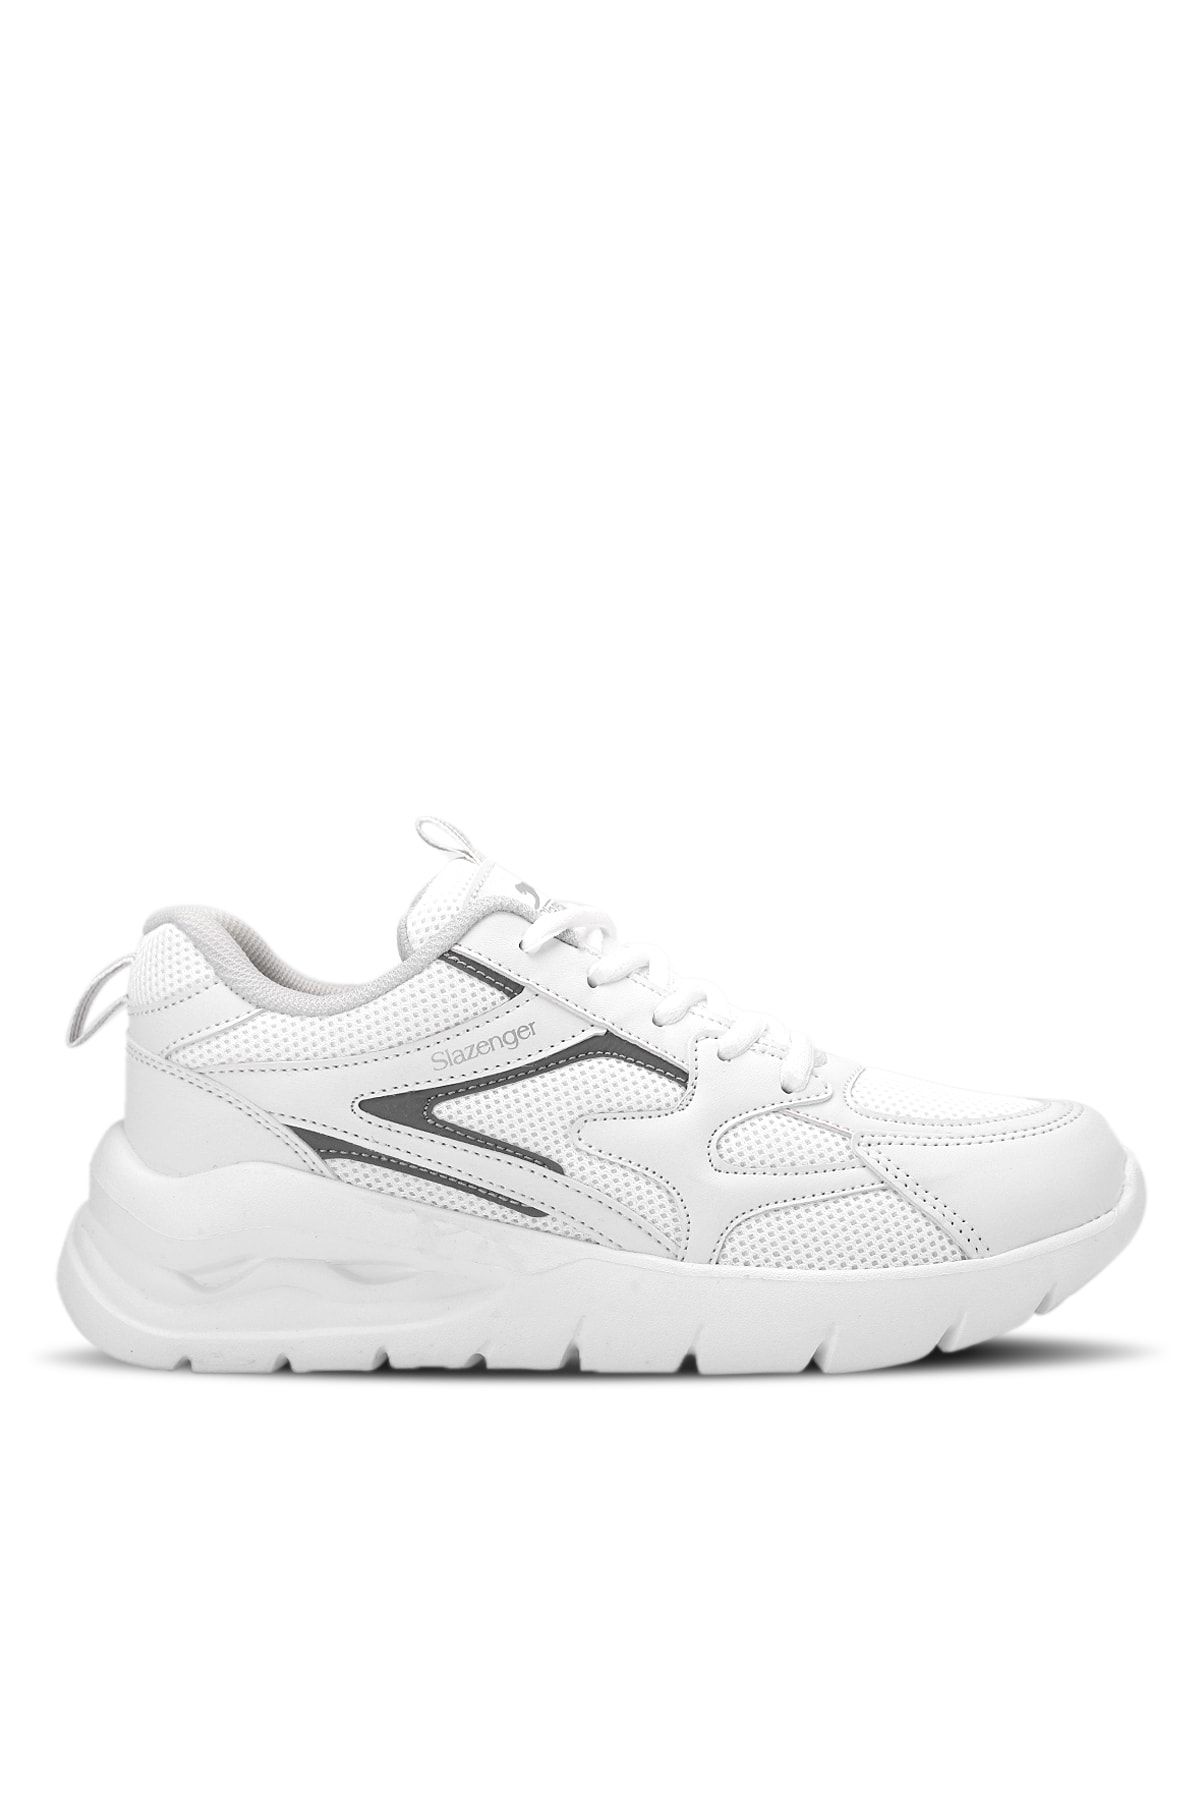 Slazenger Bılbo Sneaker Kadın Ayakkabı Beyaz